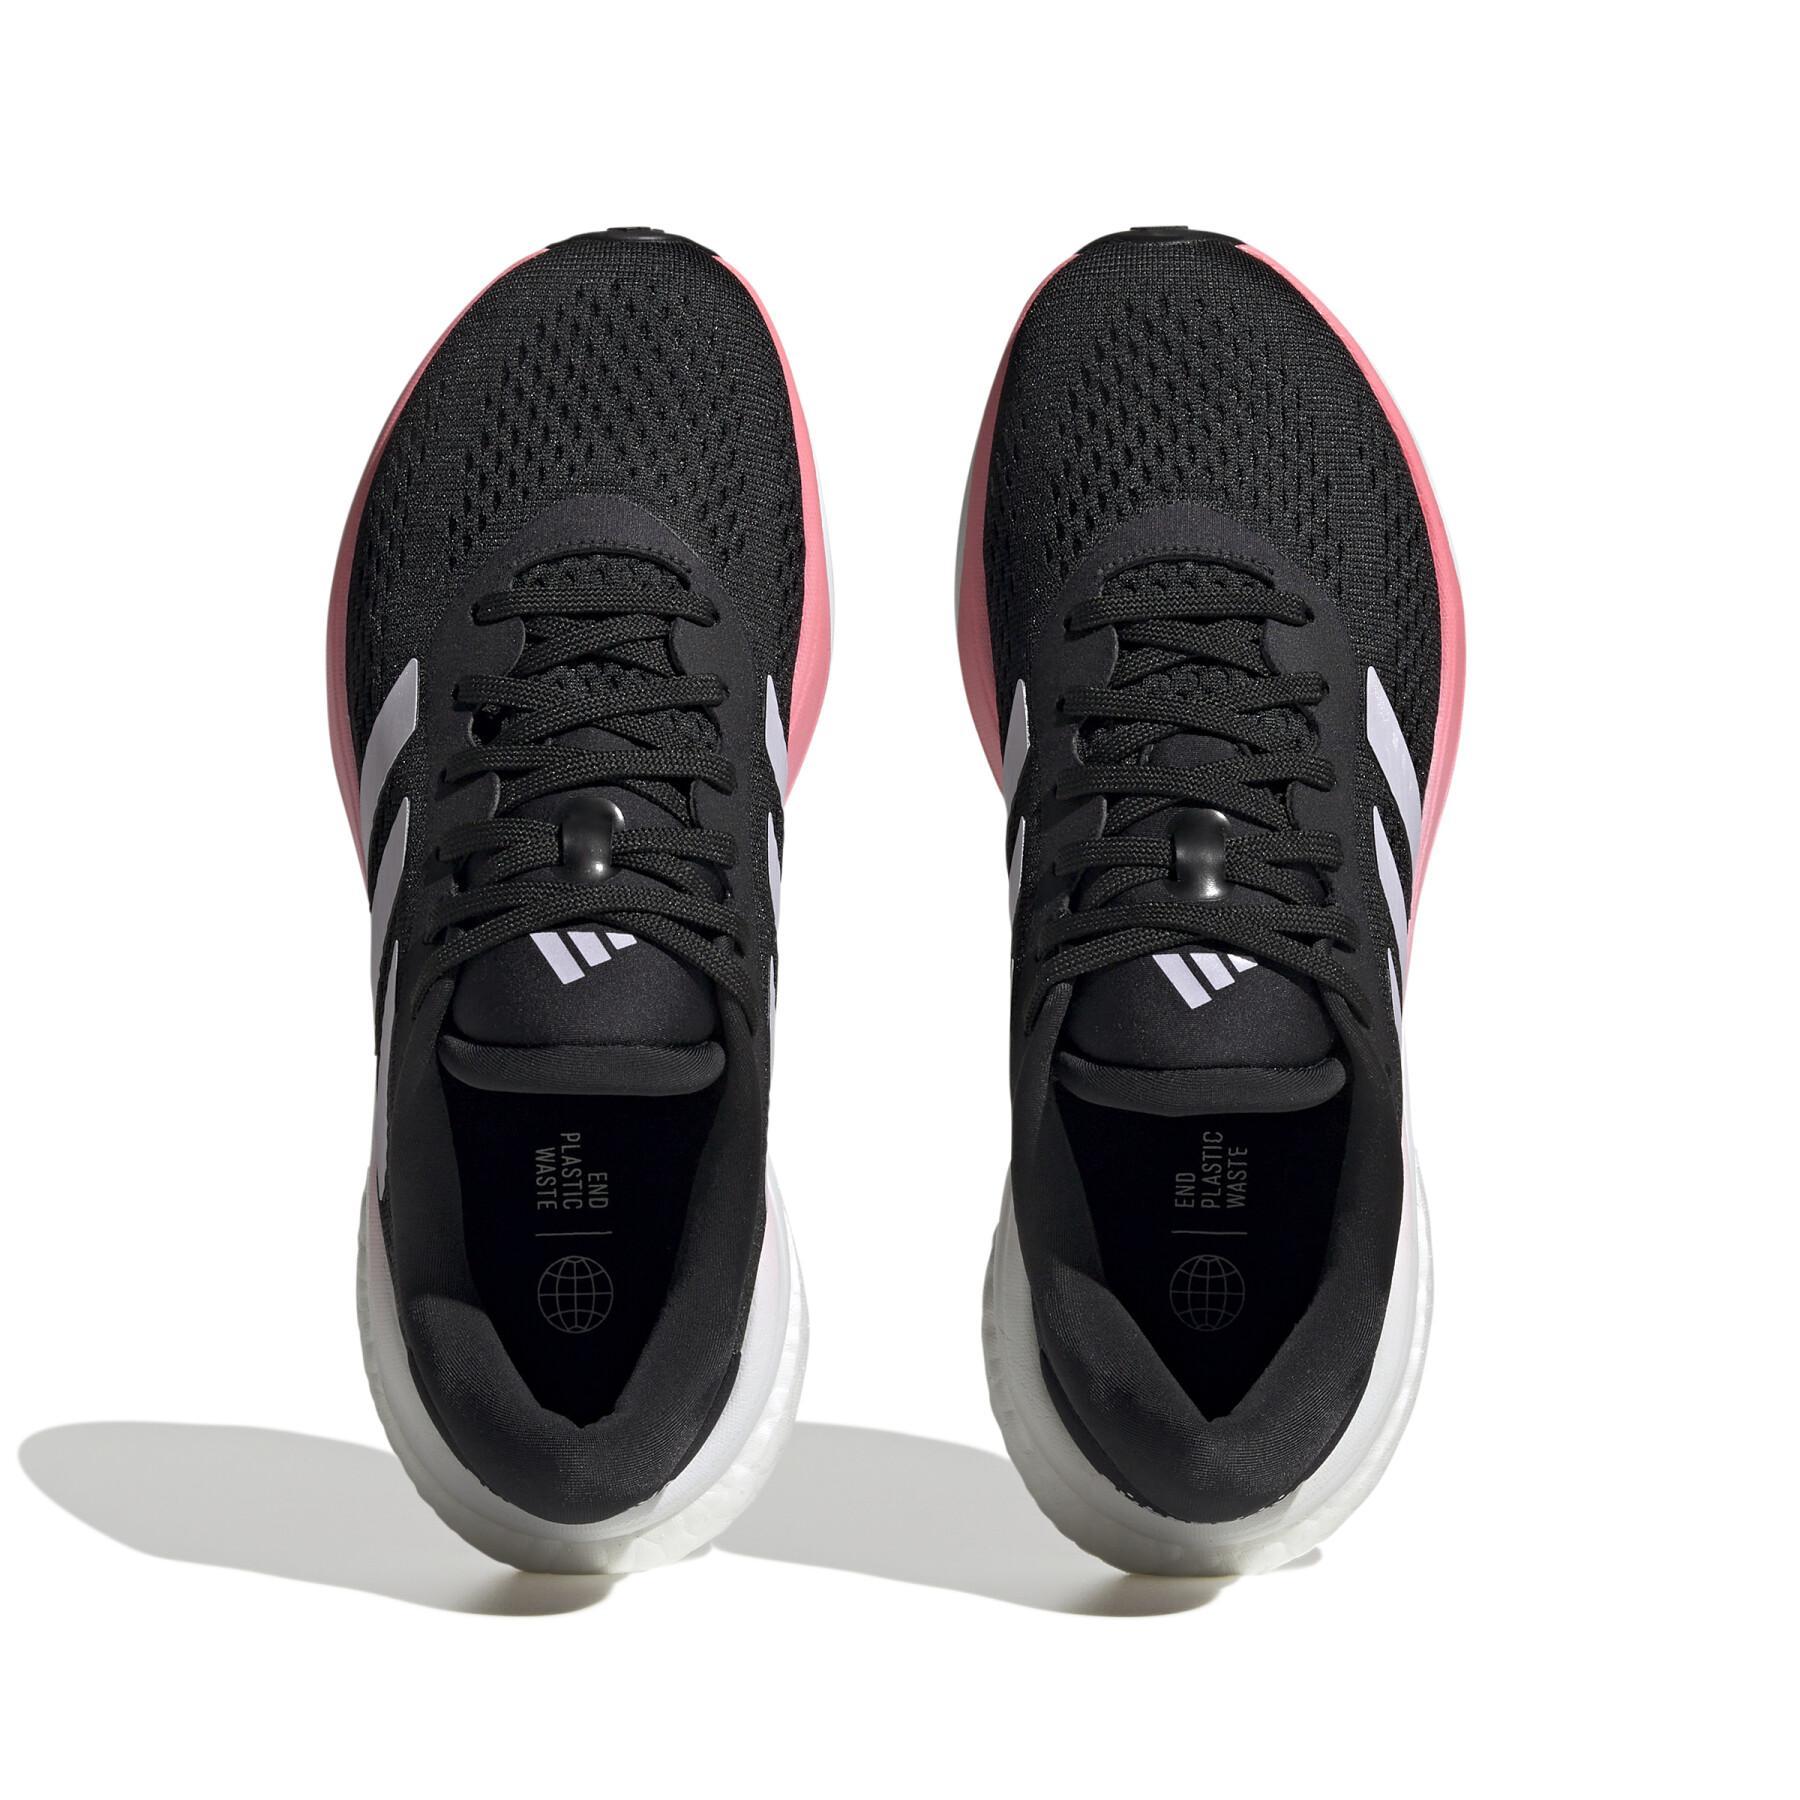 Chaussures de running femme adidas Supernova 2.0